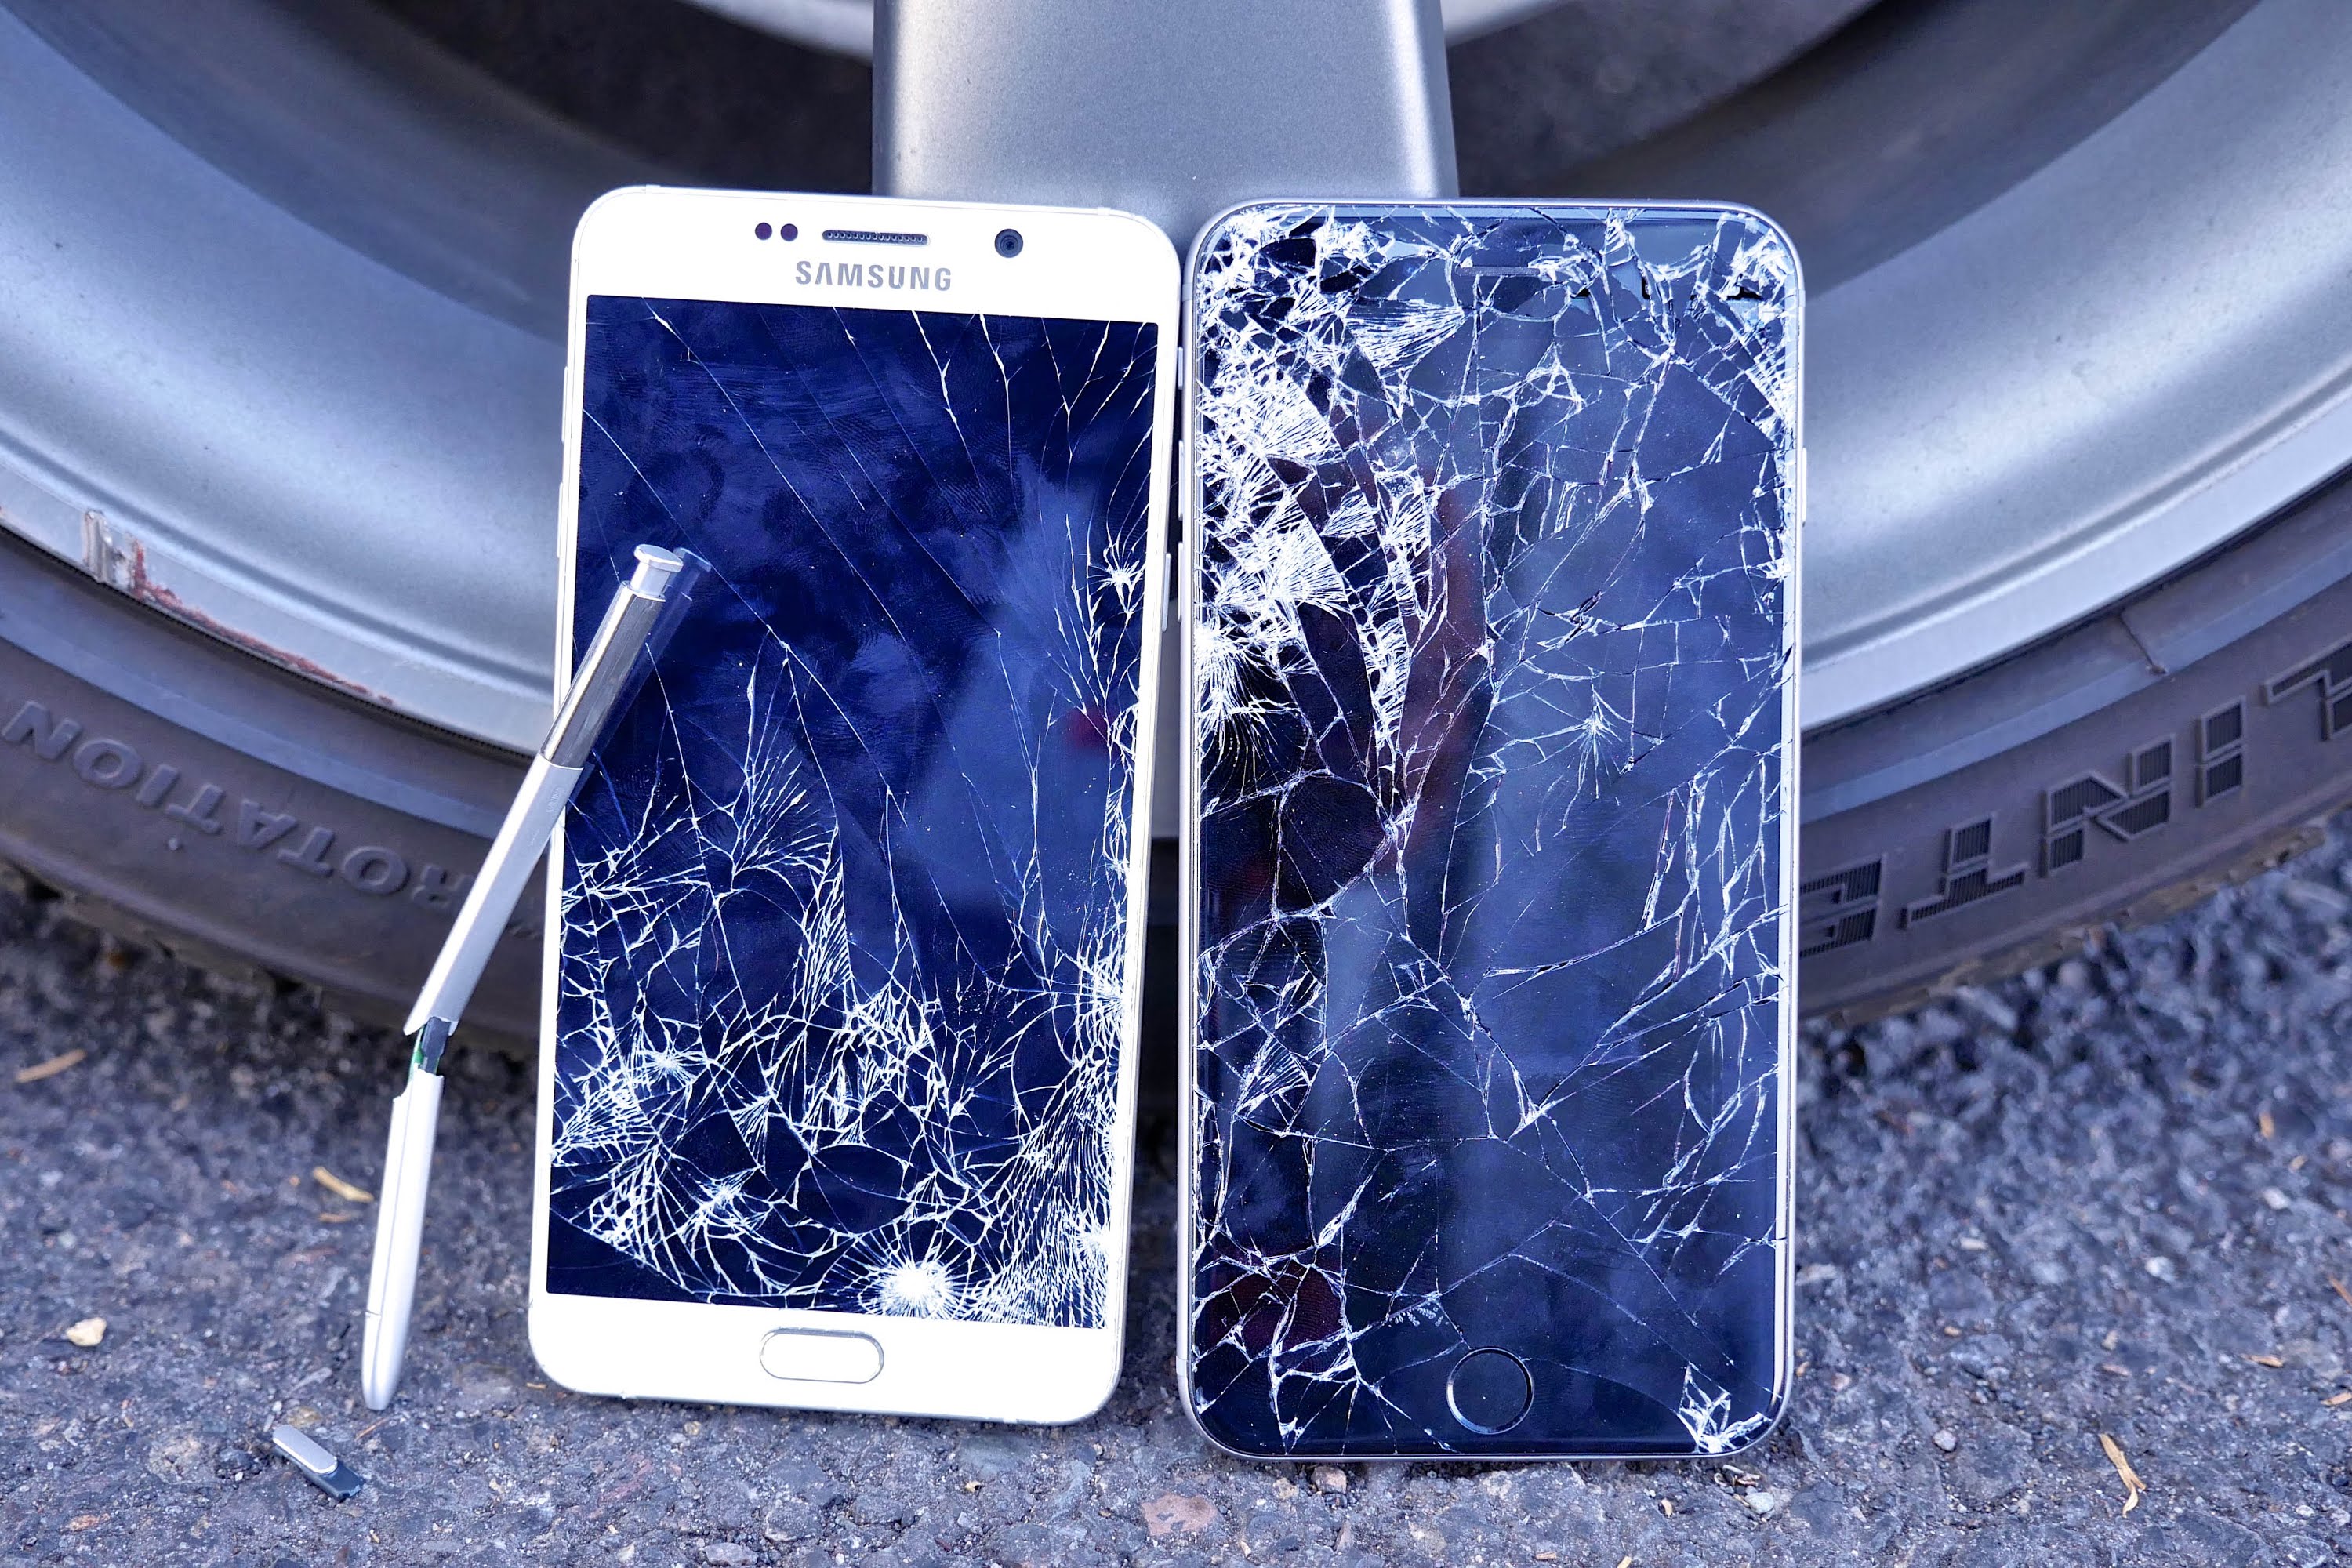 تماشاخانه: تست مقاومت زمین خوردن | Samsung Galaxy Note 5 در برابر iPhone 6 Plus - تکفارس 